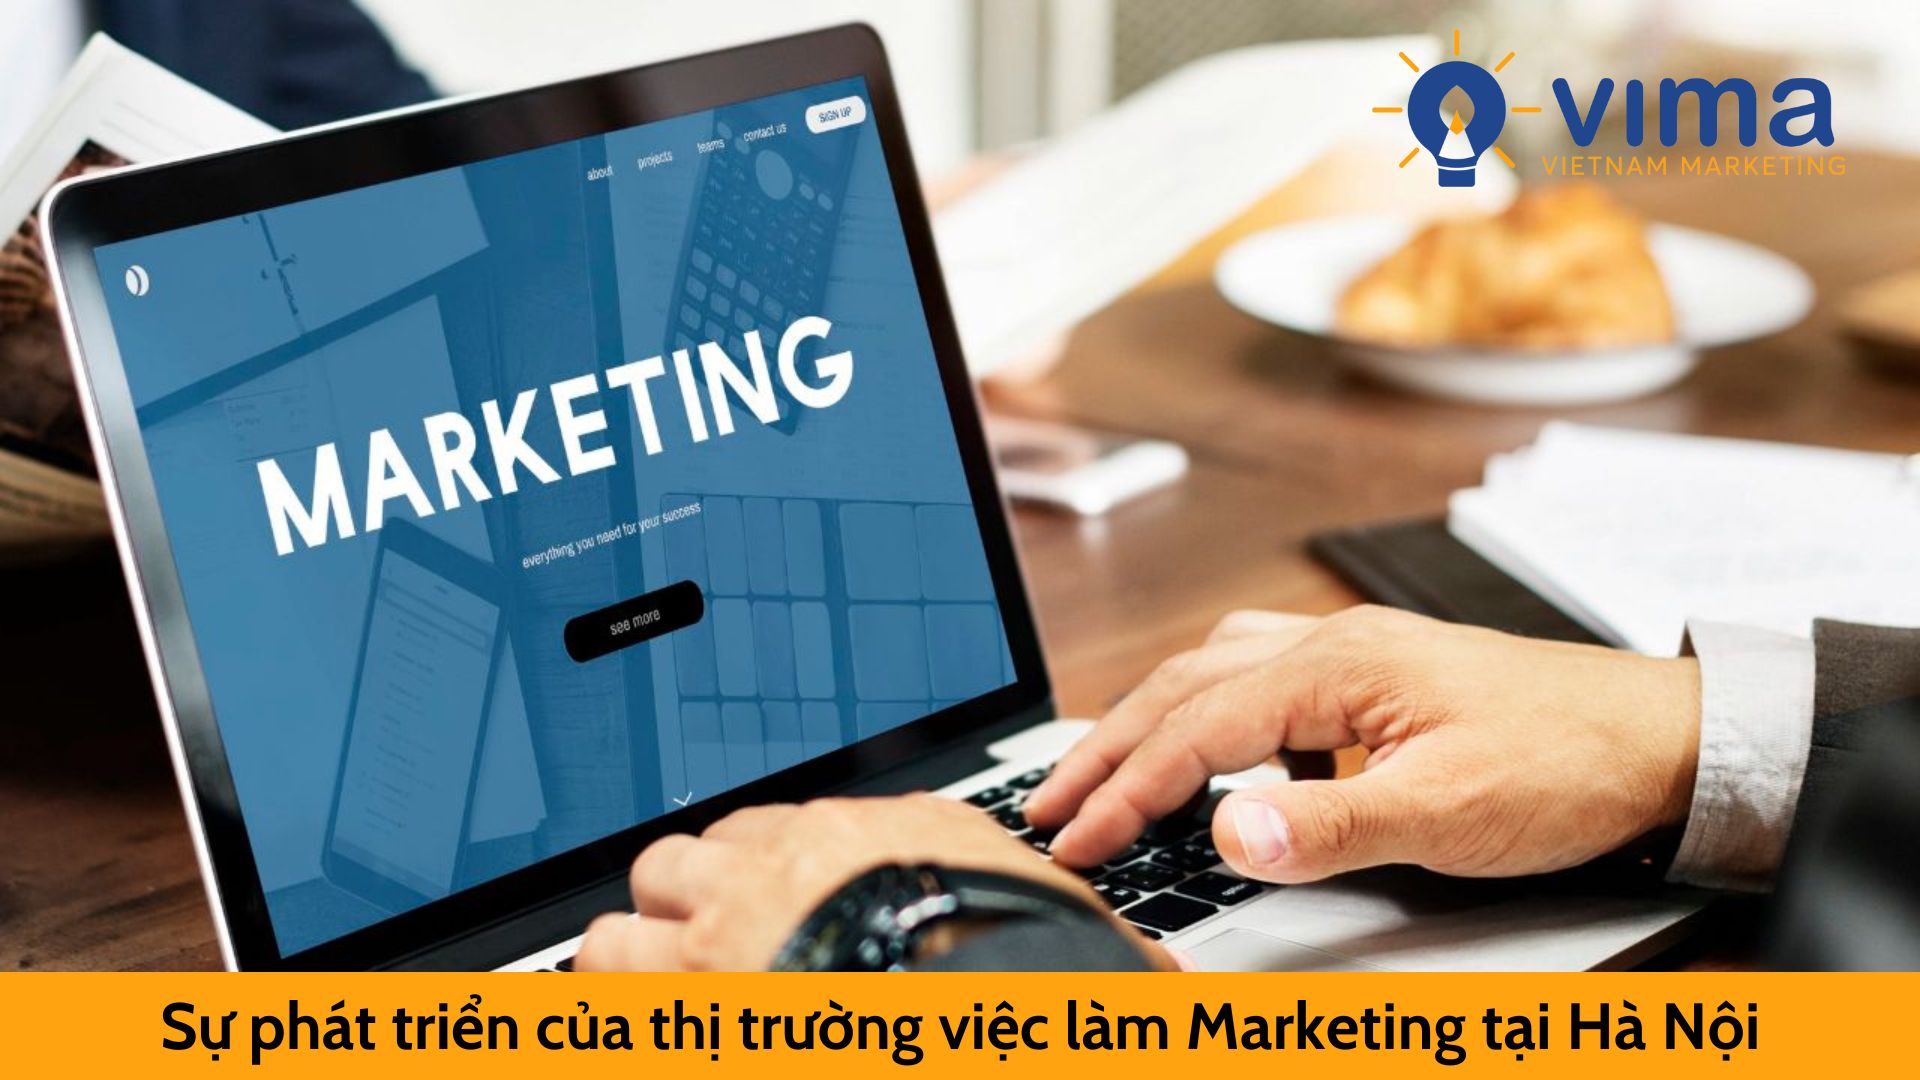 Sự phát triển của thị trường việc làm Marketing tại Hà Nội